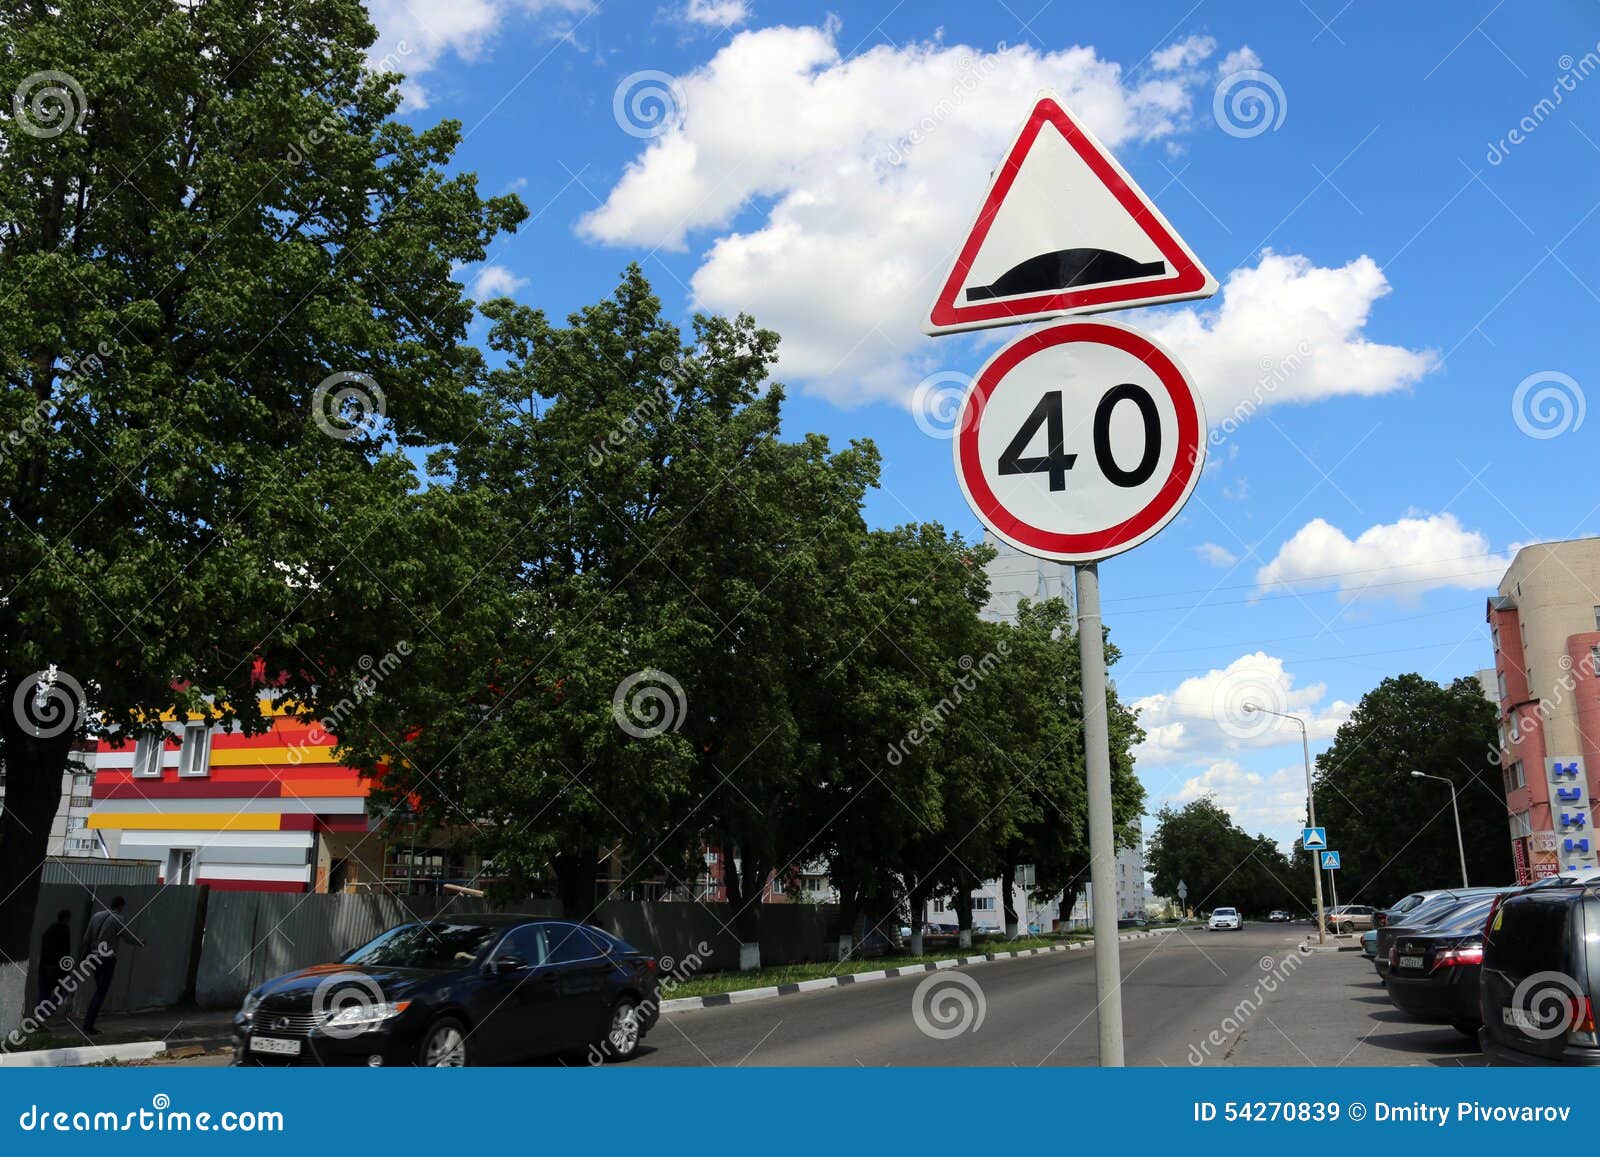 Этот дорожный знак рекомендует. Знак искусственная неровность и ограничение скорости 40. Знак 20 и искусственная неровность. Знаки дорожного движения лежачий полицейский. Знак лежачий полицейский и неровная дорога.